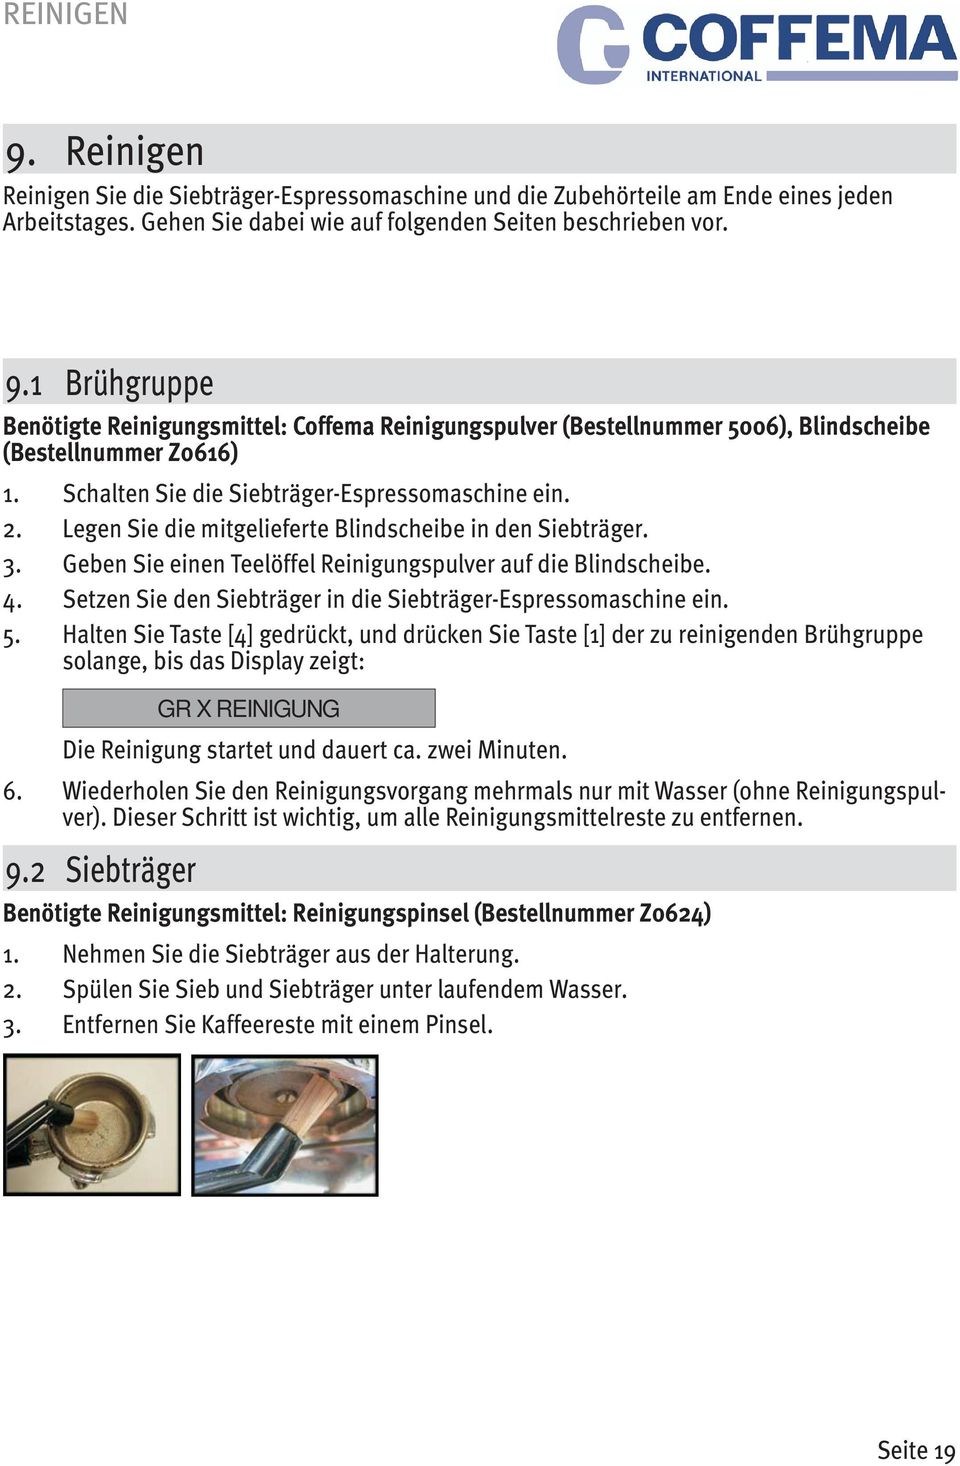 Coffema empfohlenen Reinigungsmittel benutzt werden. 9.1 Brühgruppe Benötigte Reinigungsmittel: Coffema Reinigungspulver (Bestellnummer 5006), Blindscheibe (Bestellnummer Z0616) 1.